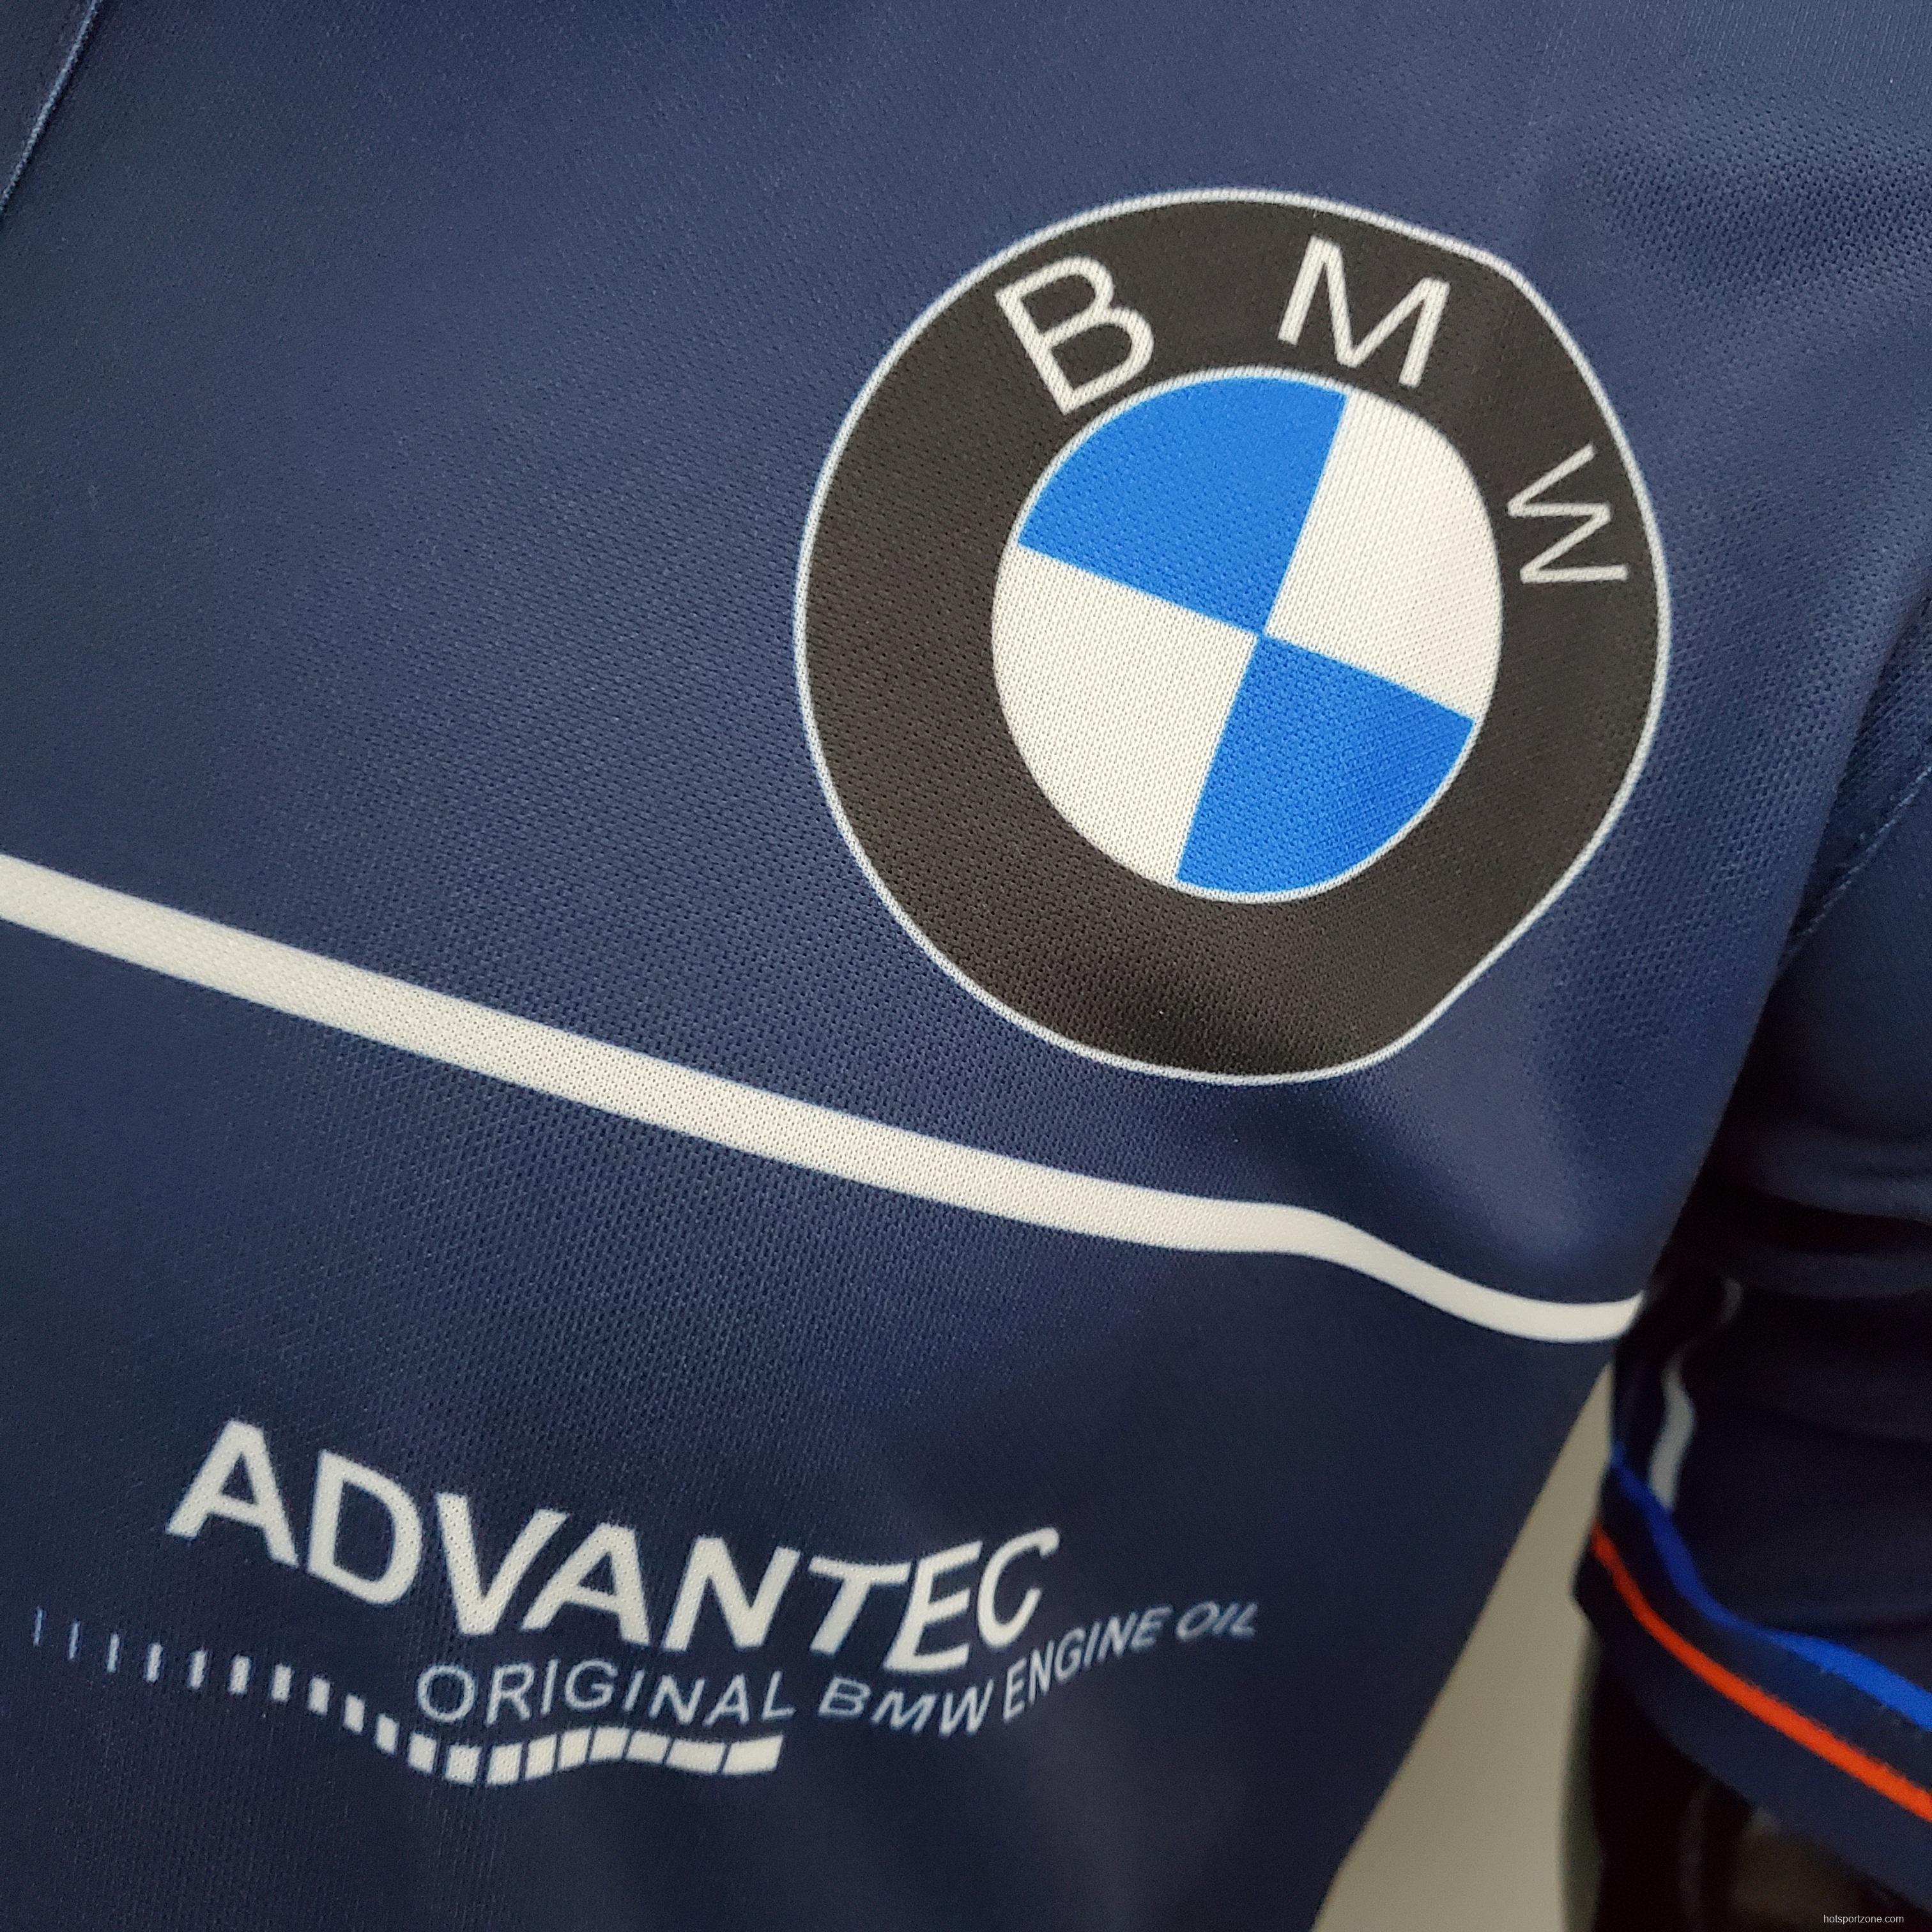 F1 Formula One; BMW Royal Blue S-5XL